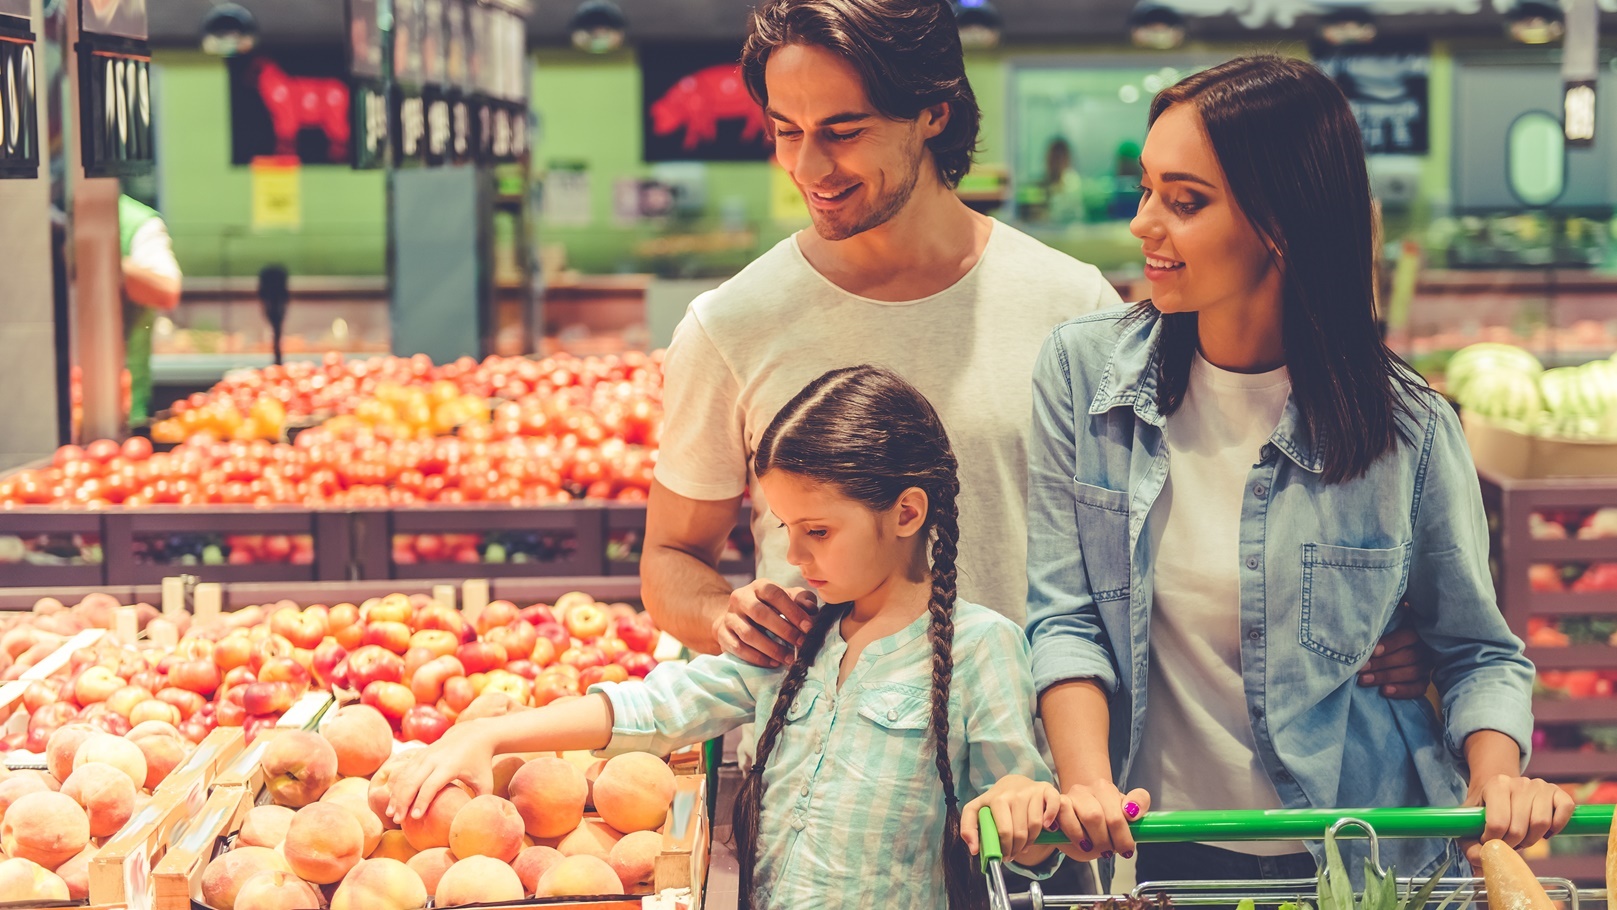 family-in-the-supermarket-2021-08-29-16-14-13-utc